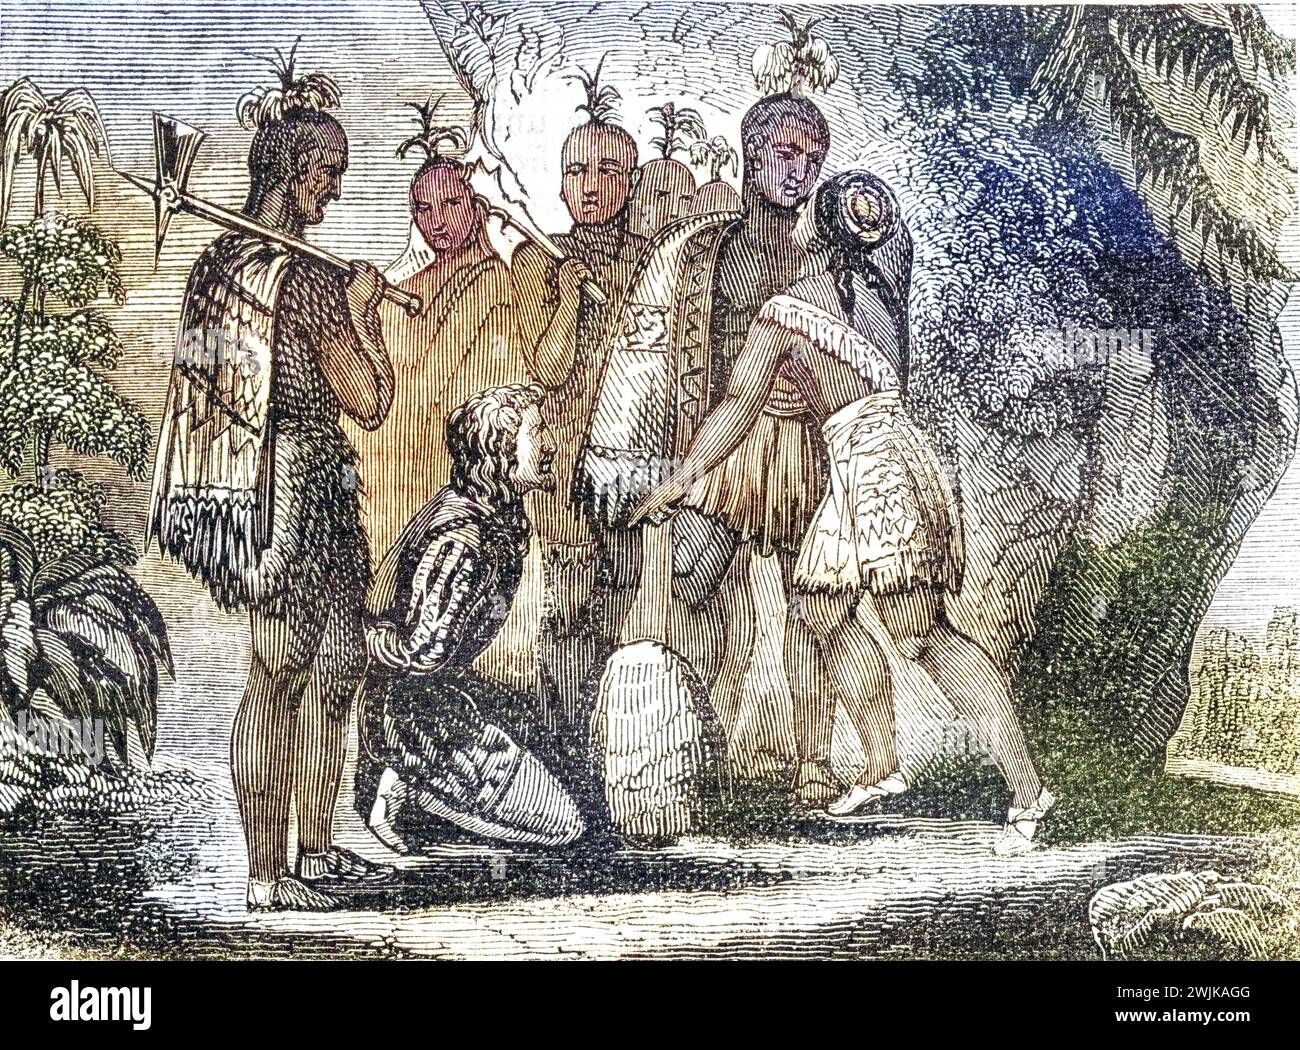 Pocahontas legt Fürsprache für das Leben von Smith ein, 1607. Kapitän John Smith, 1580-1631 Englischer Soldat und Entdecker. Pocahontas (Matoaka) 1595-1617 Algonqiuan-Indianerprinzessin, Historisch, digital restaurierte Reproduktion von einer Vorlage aus dem 19. Jahrhundert, Record date not stated Stock Photo